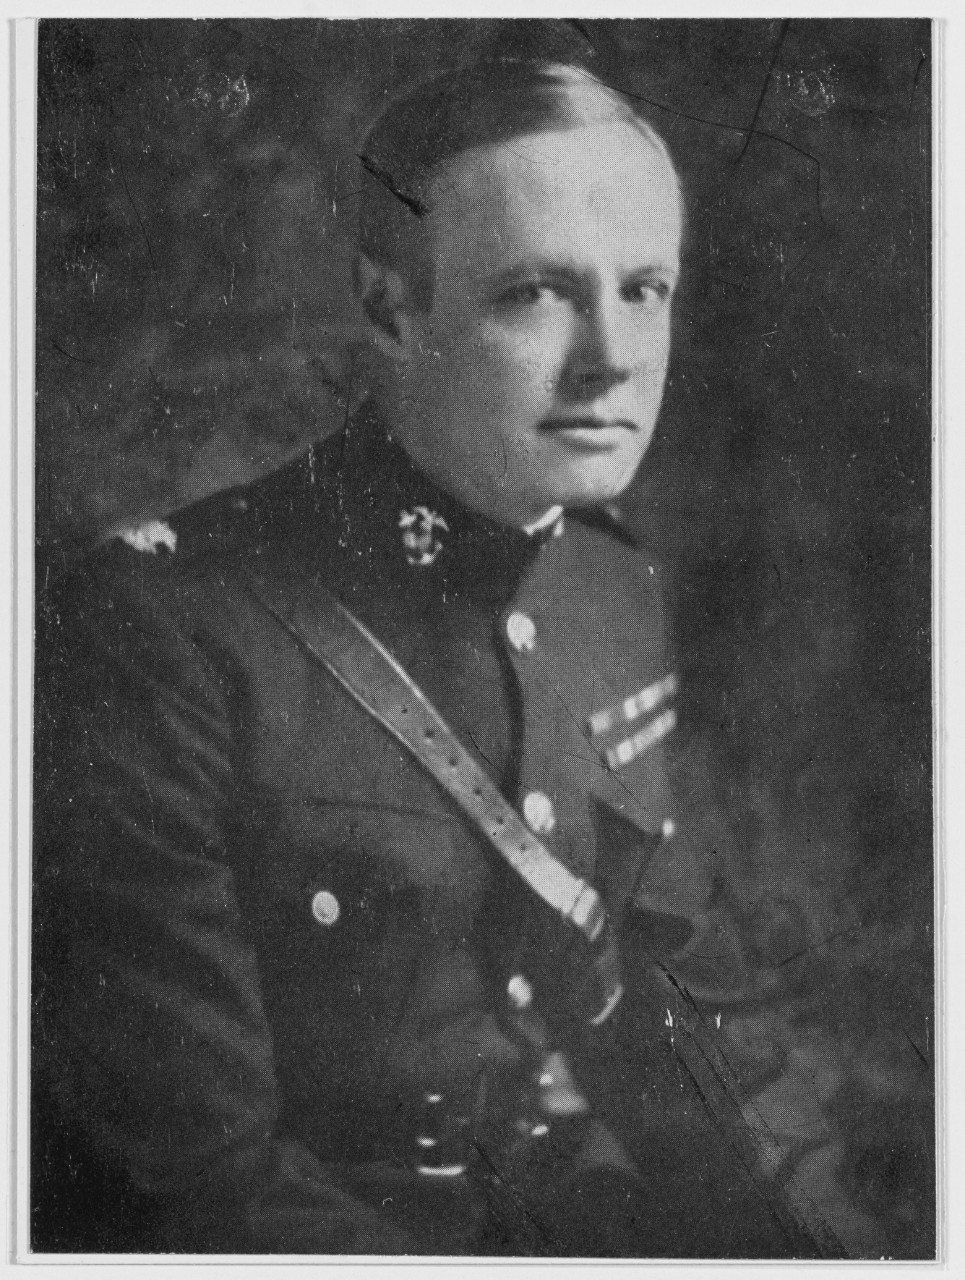 Colonel Louis McC. Little, USMC